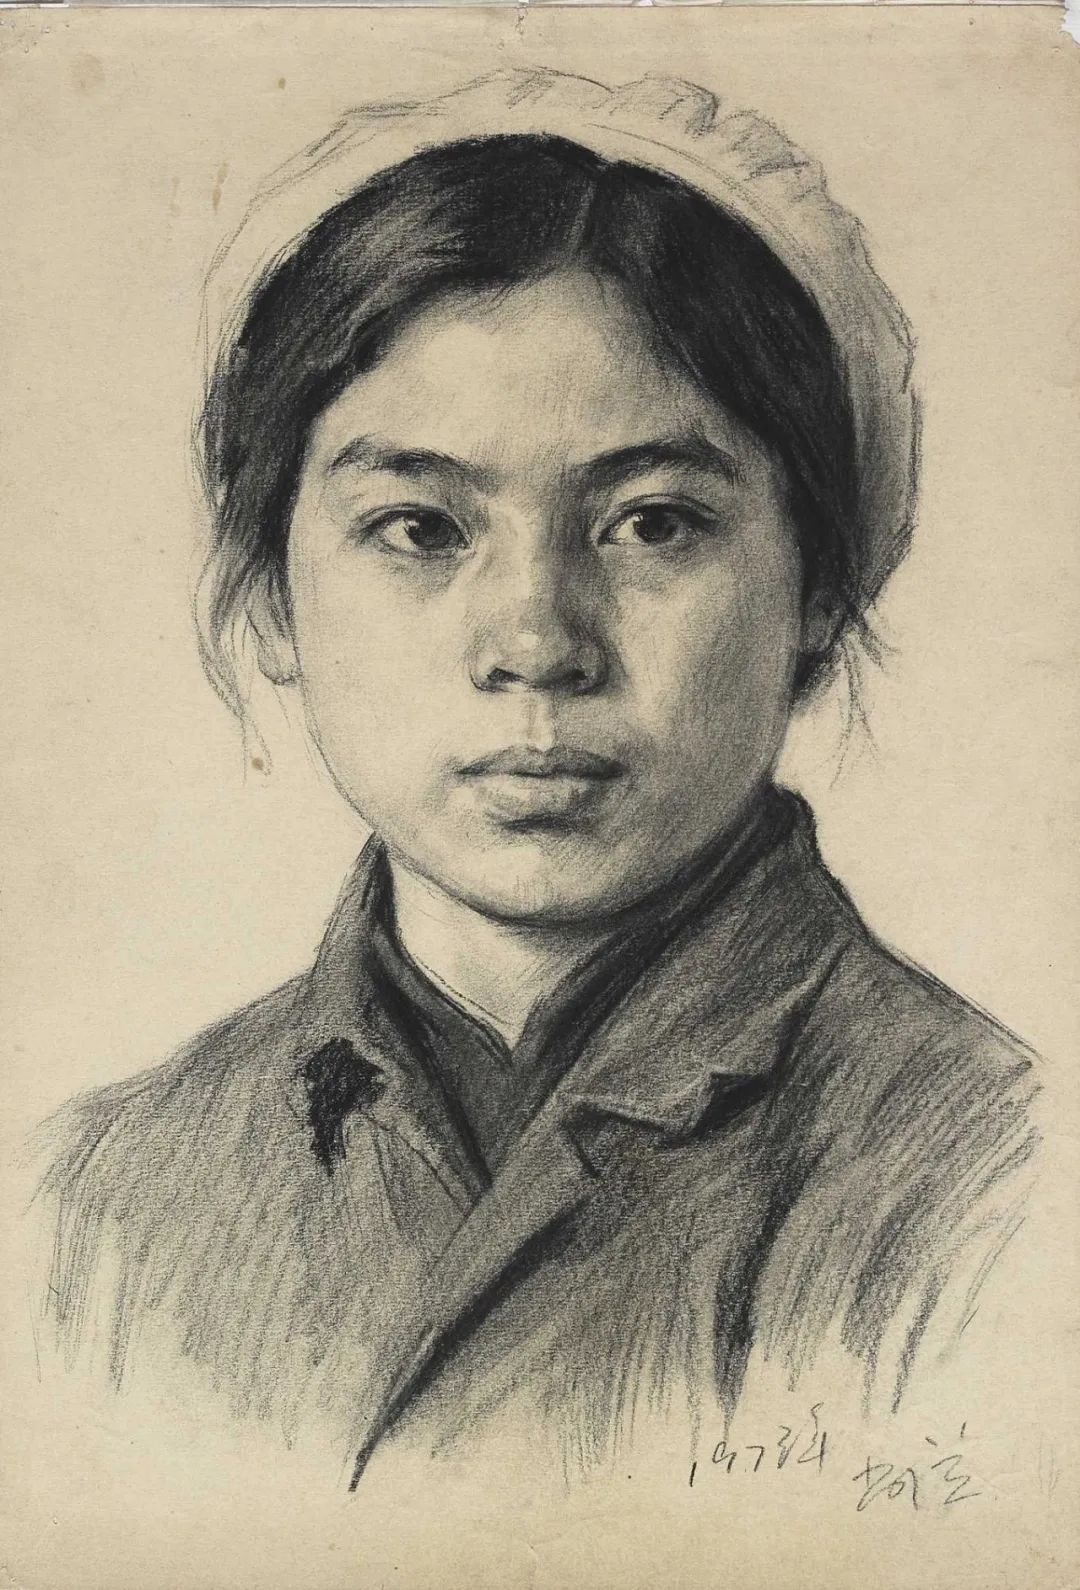 央美老院长靳尚谊，女性肖像素描